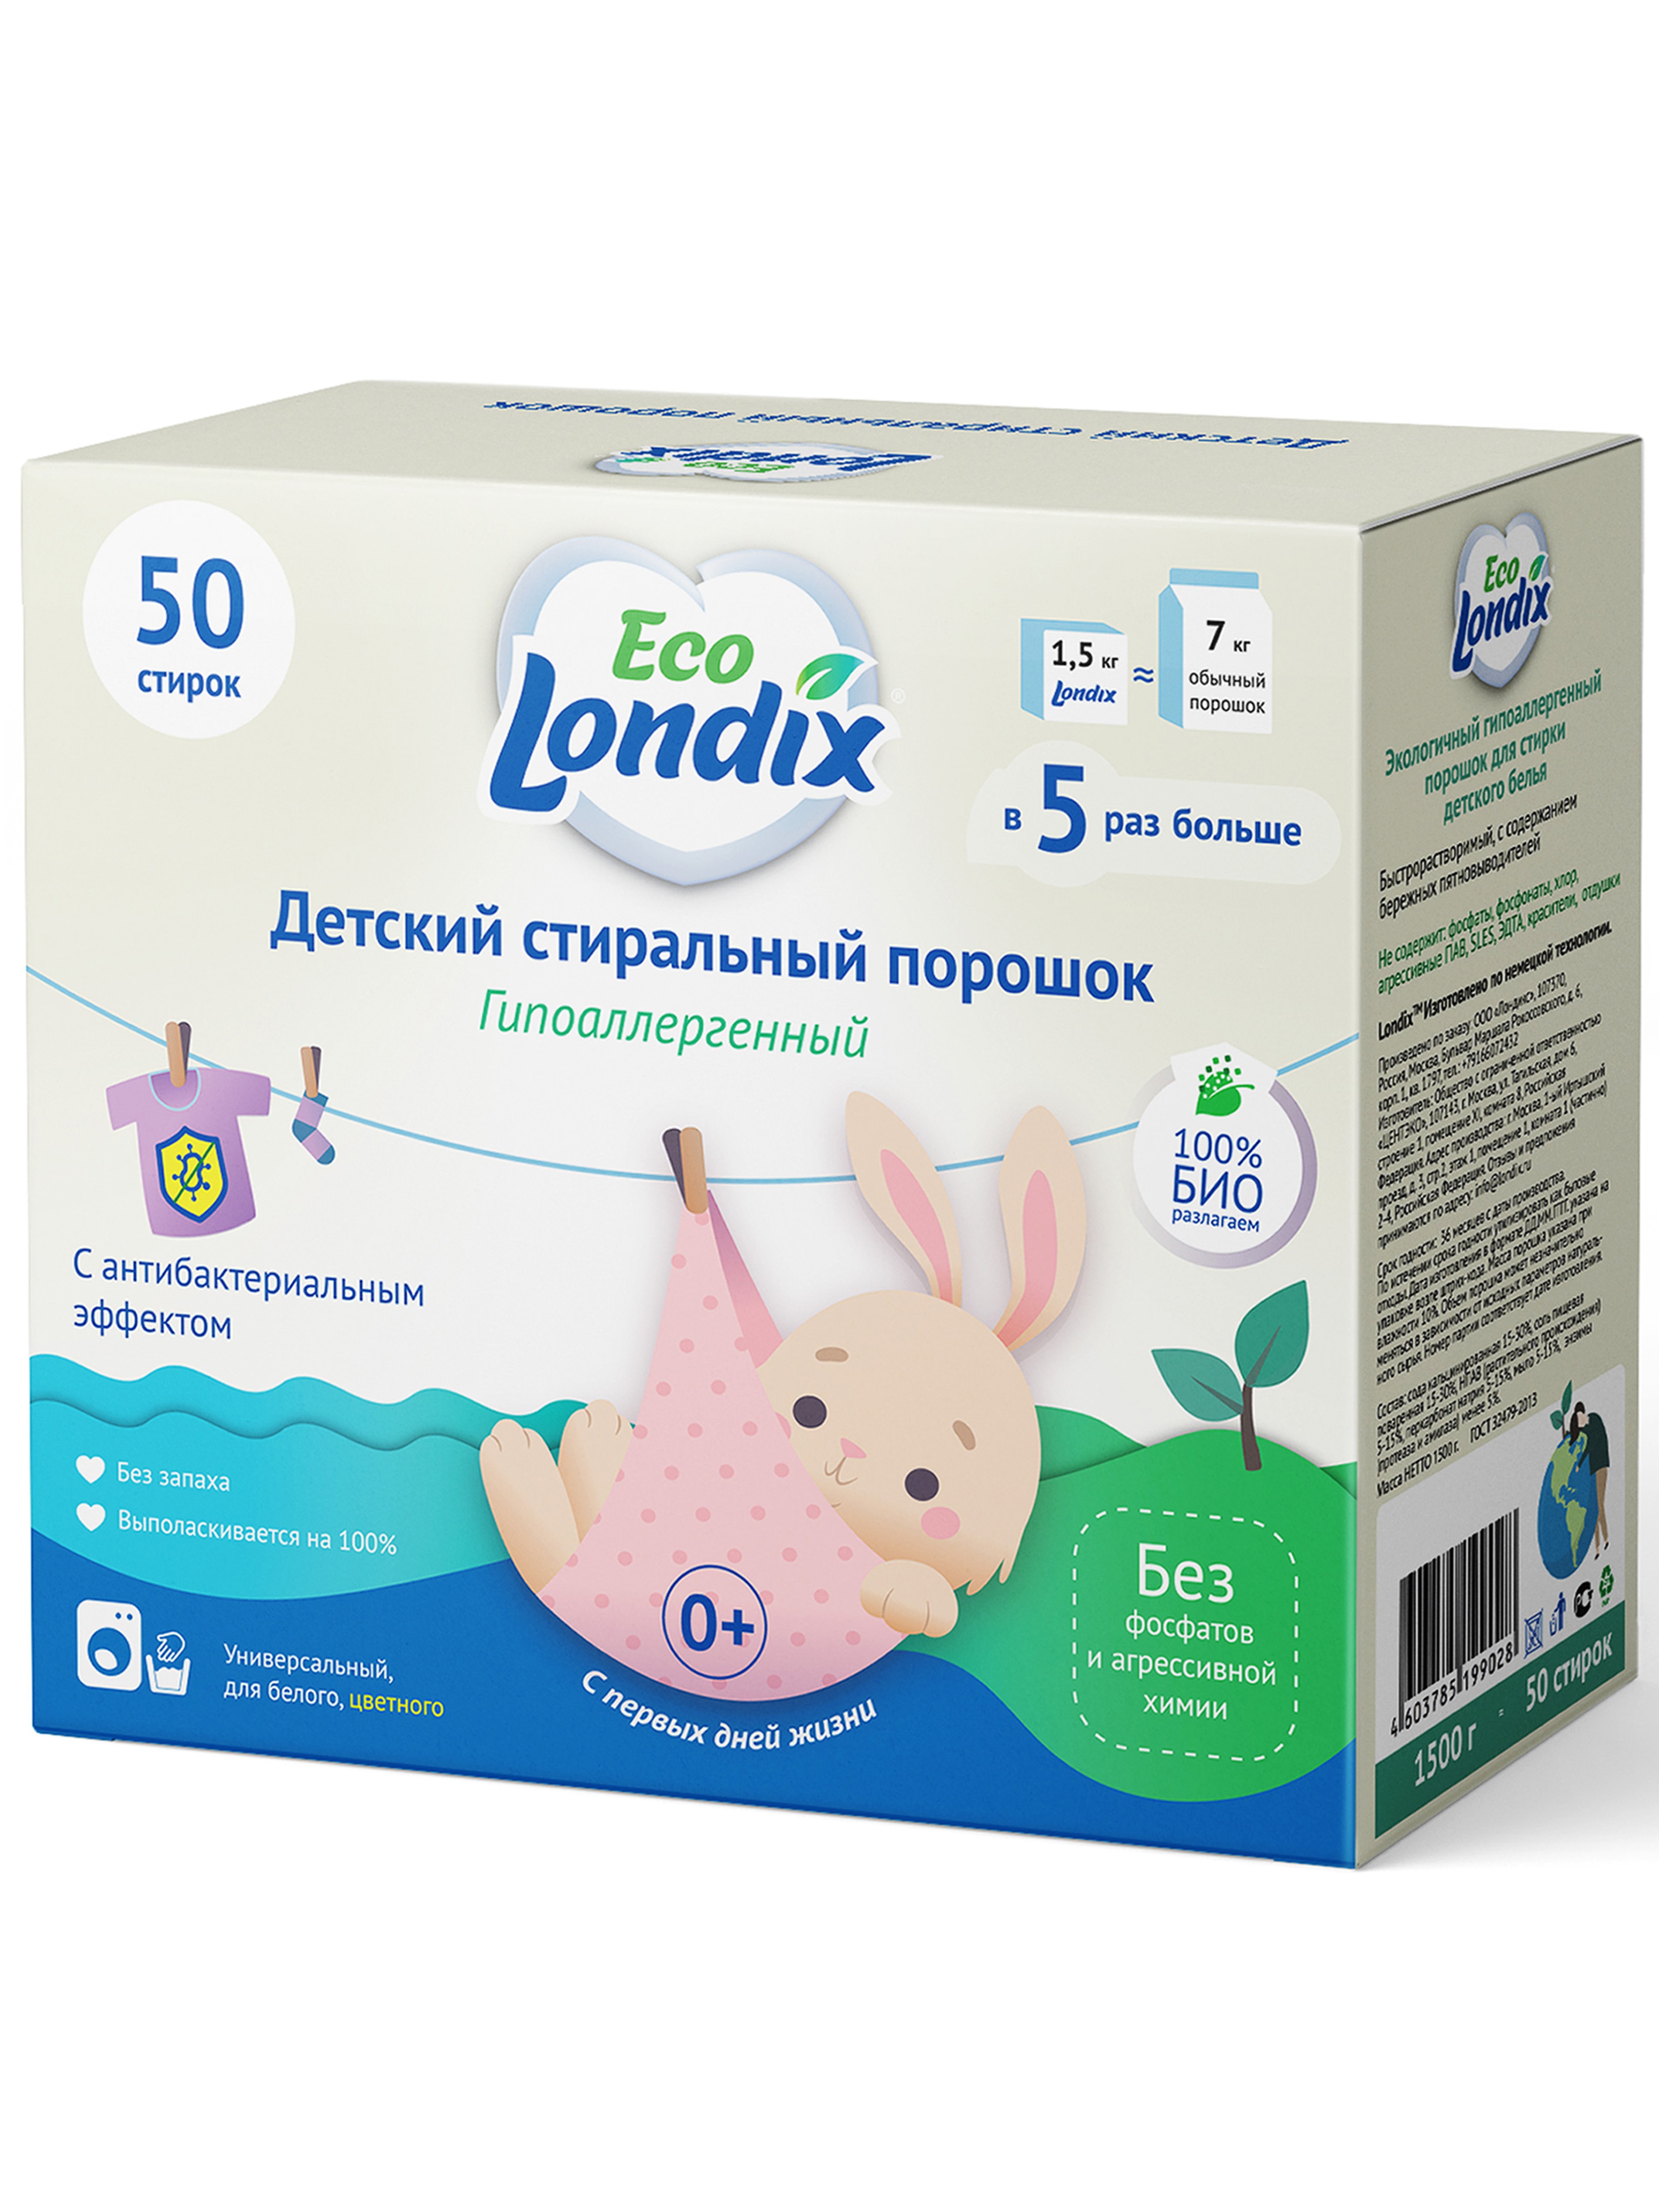 Купить ПД, Гипоаллергенный детский стиральный порошок Eco Londix, 1, 5 кг (50 стирок),